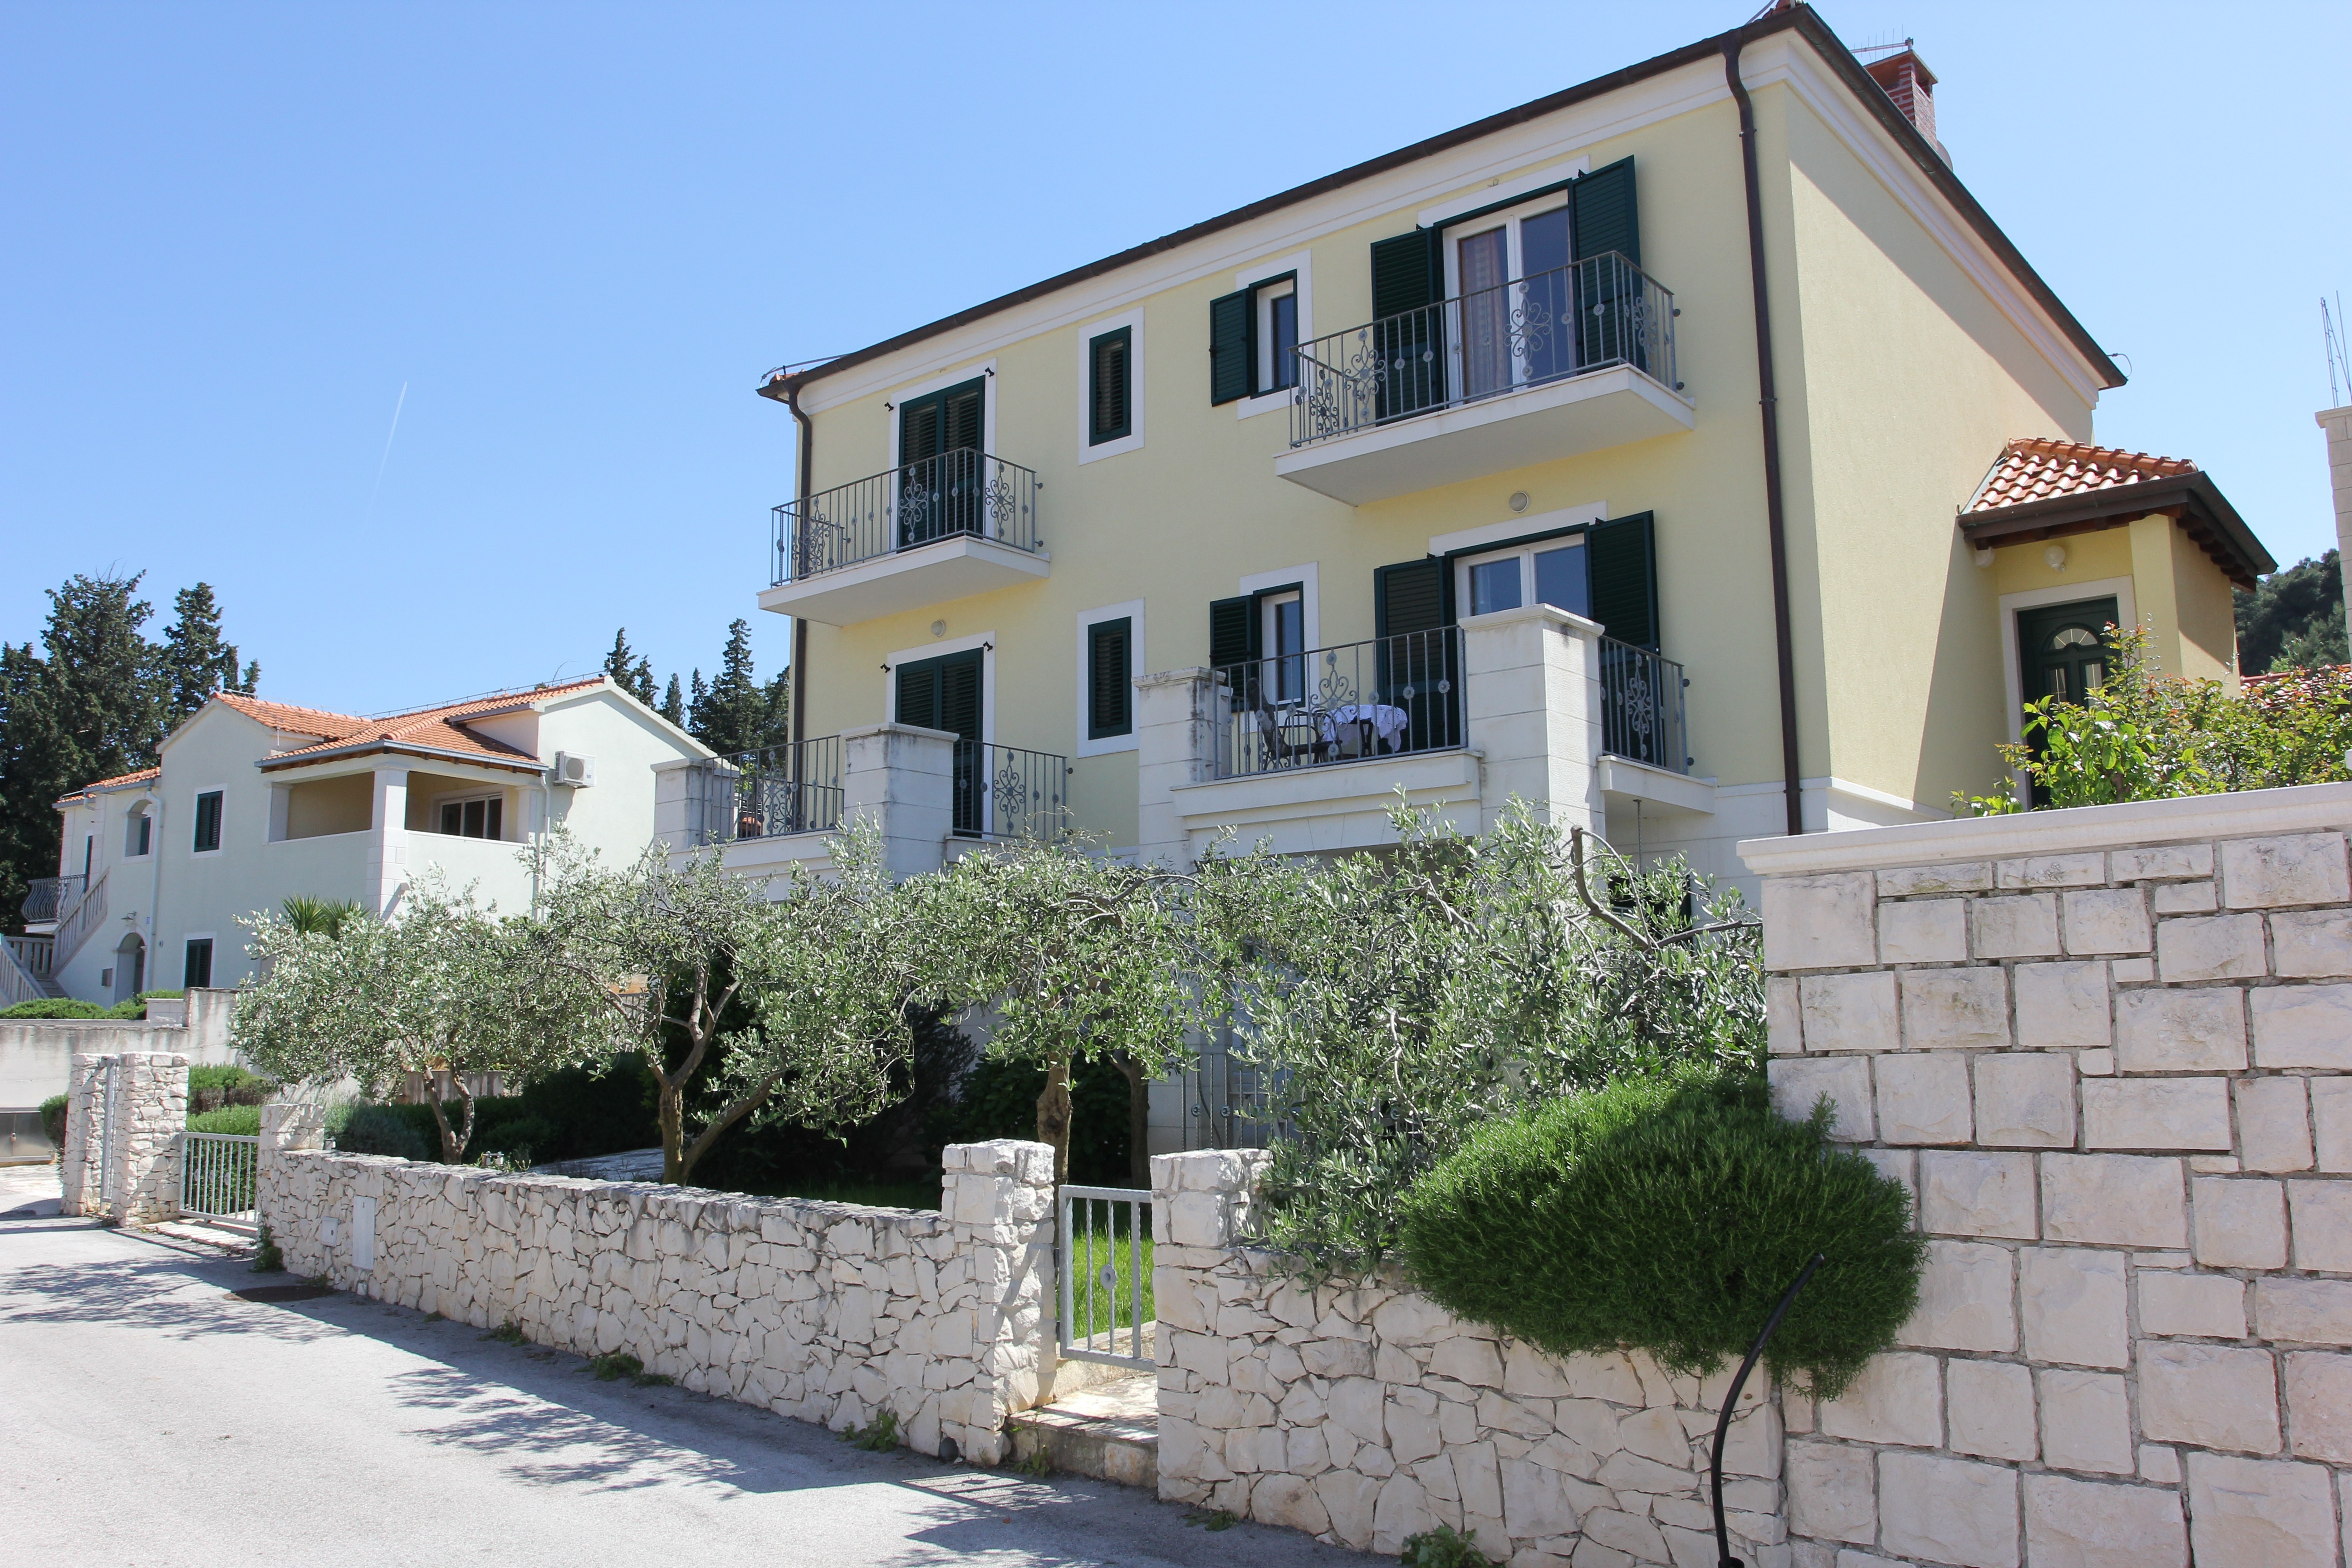 Apartments Villa Mu?kat - Duplex Three Bedroom Apa  in Dalmatien